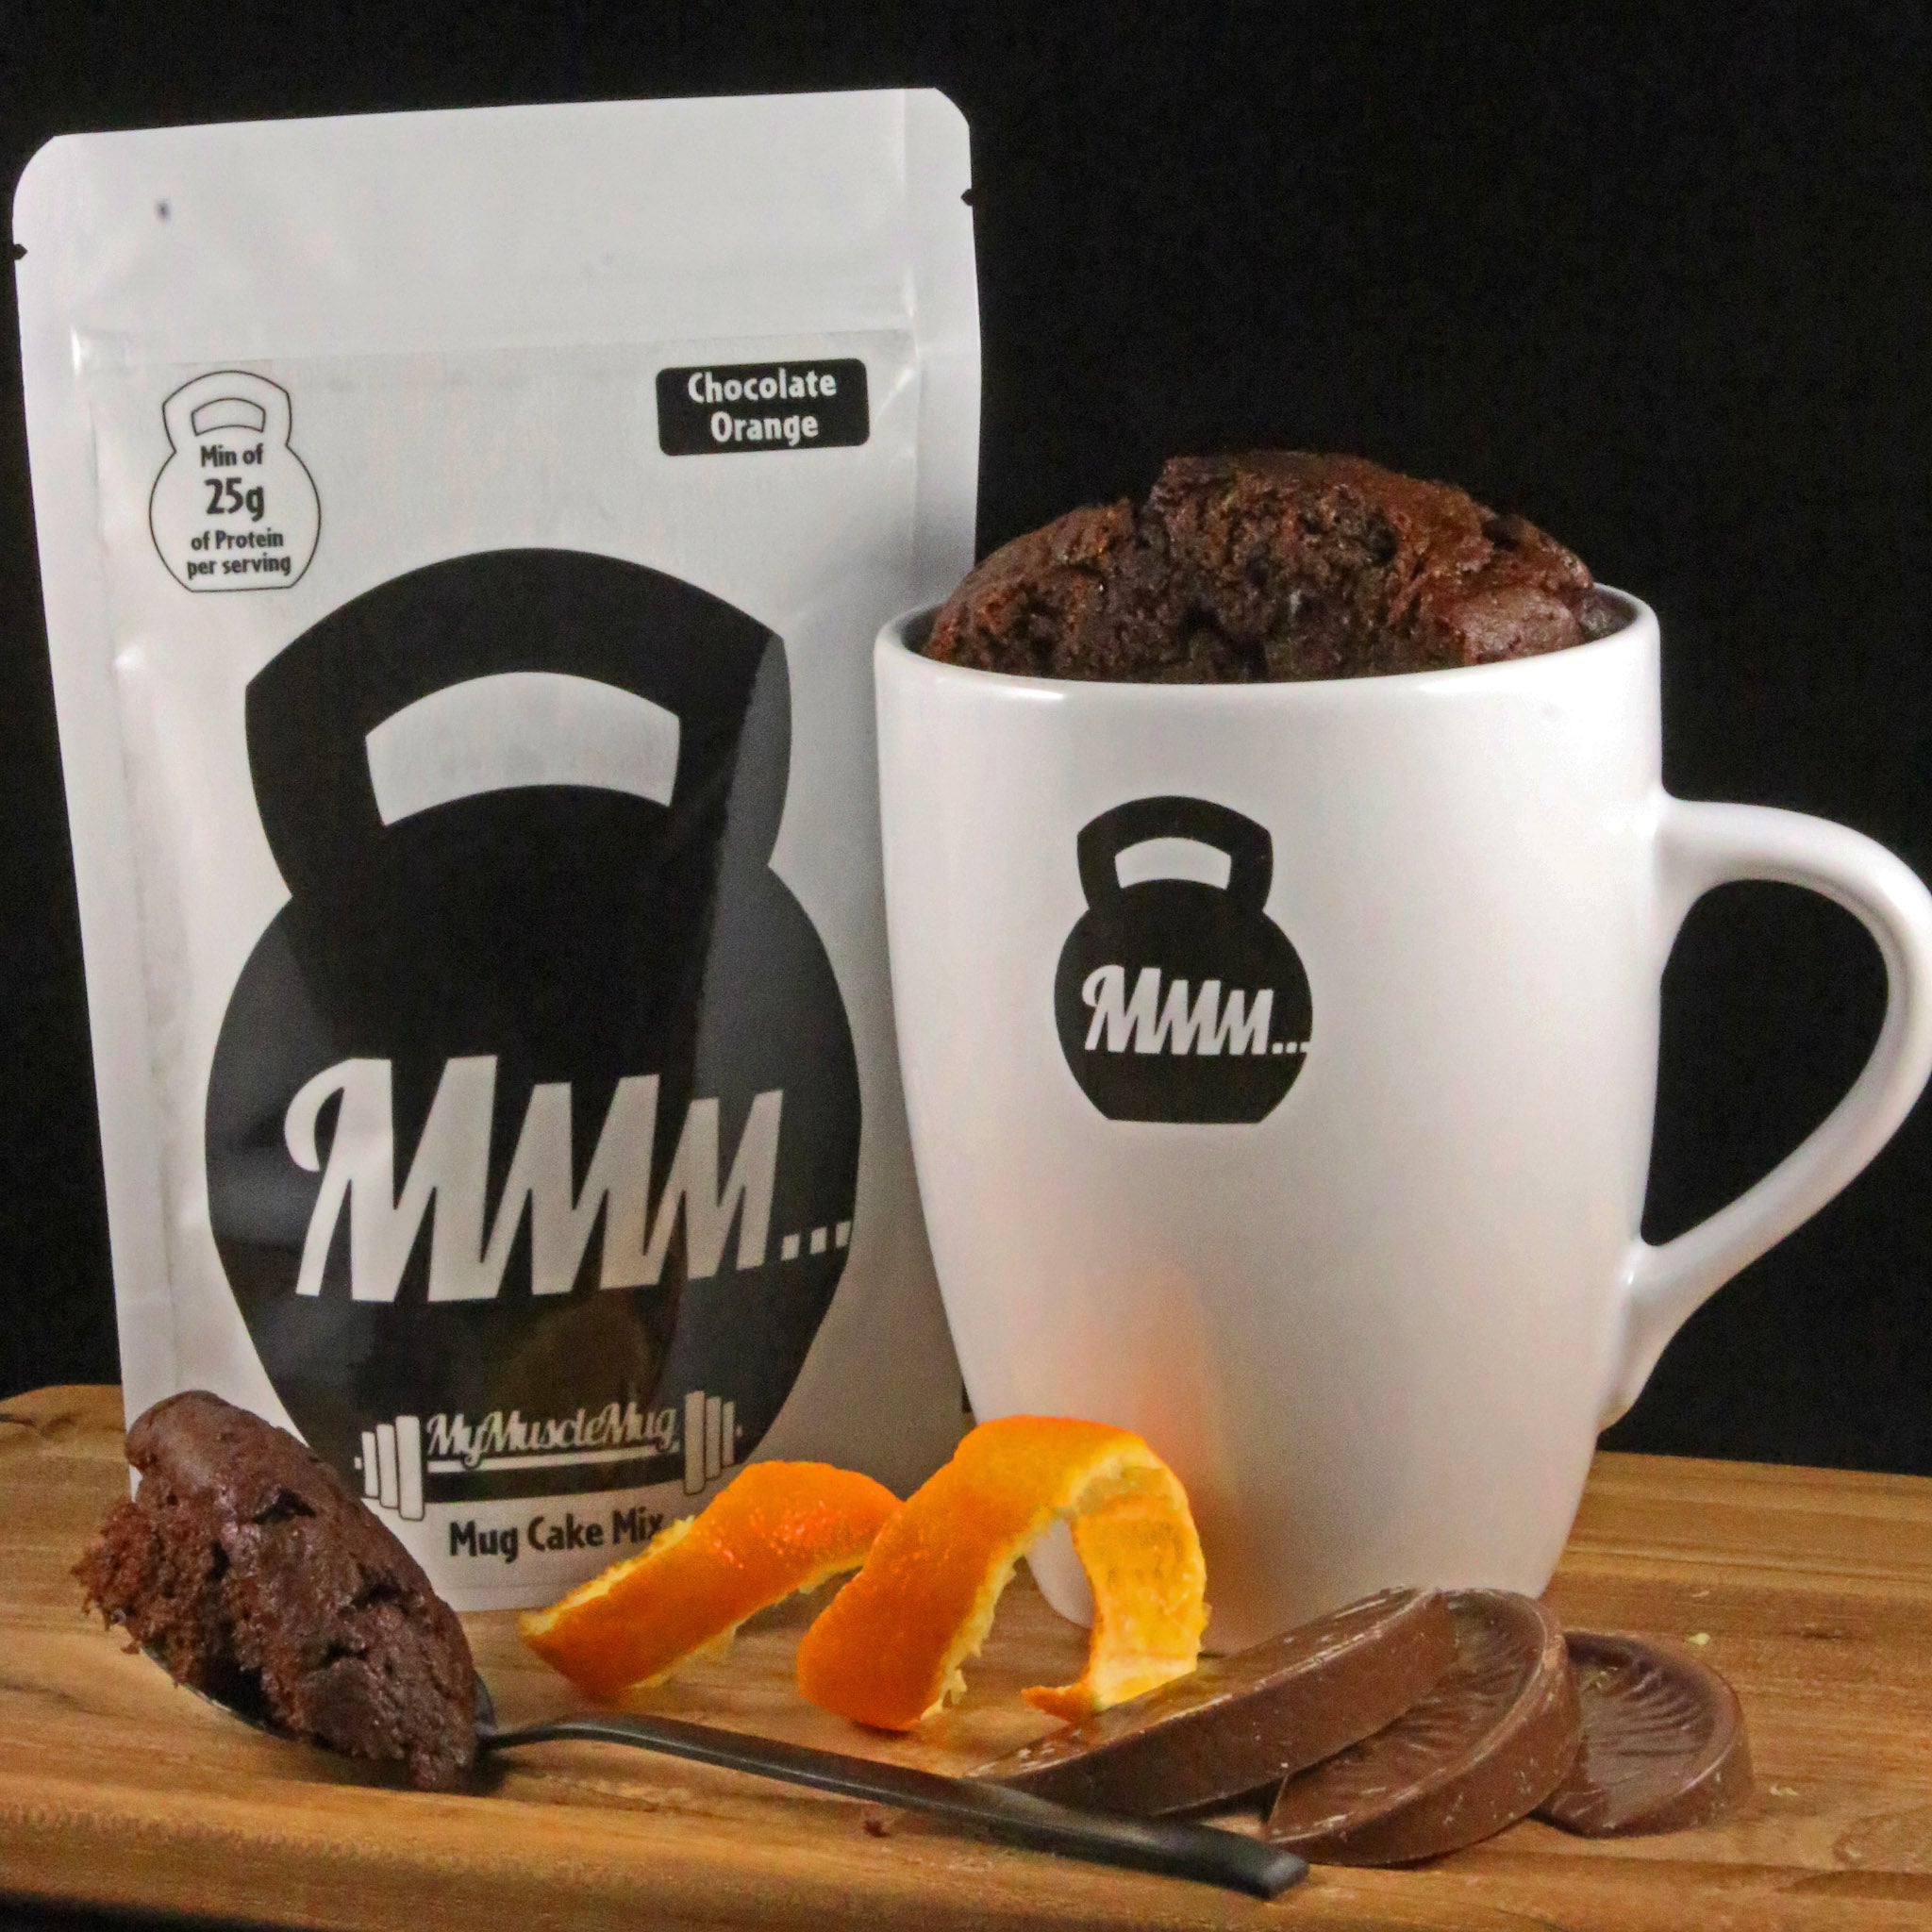 Chocolate Orange MyMuscleMug Cake Mix | Mug Cake